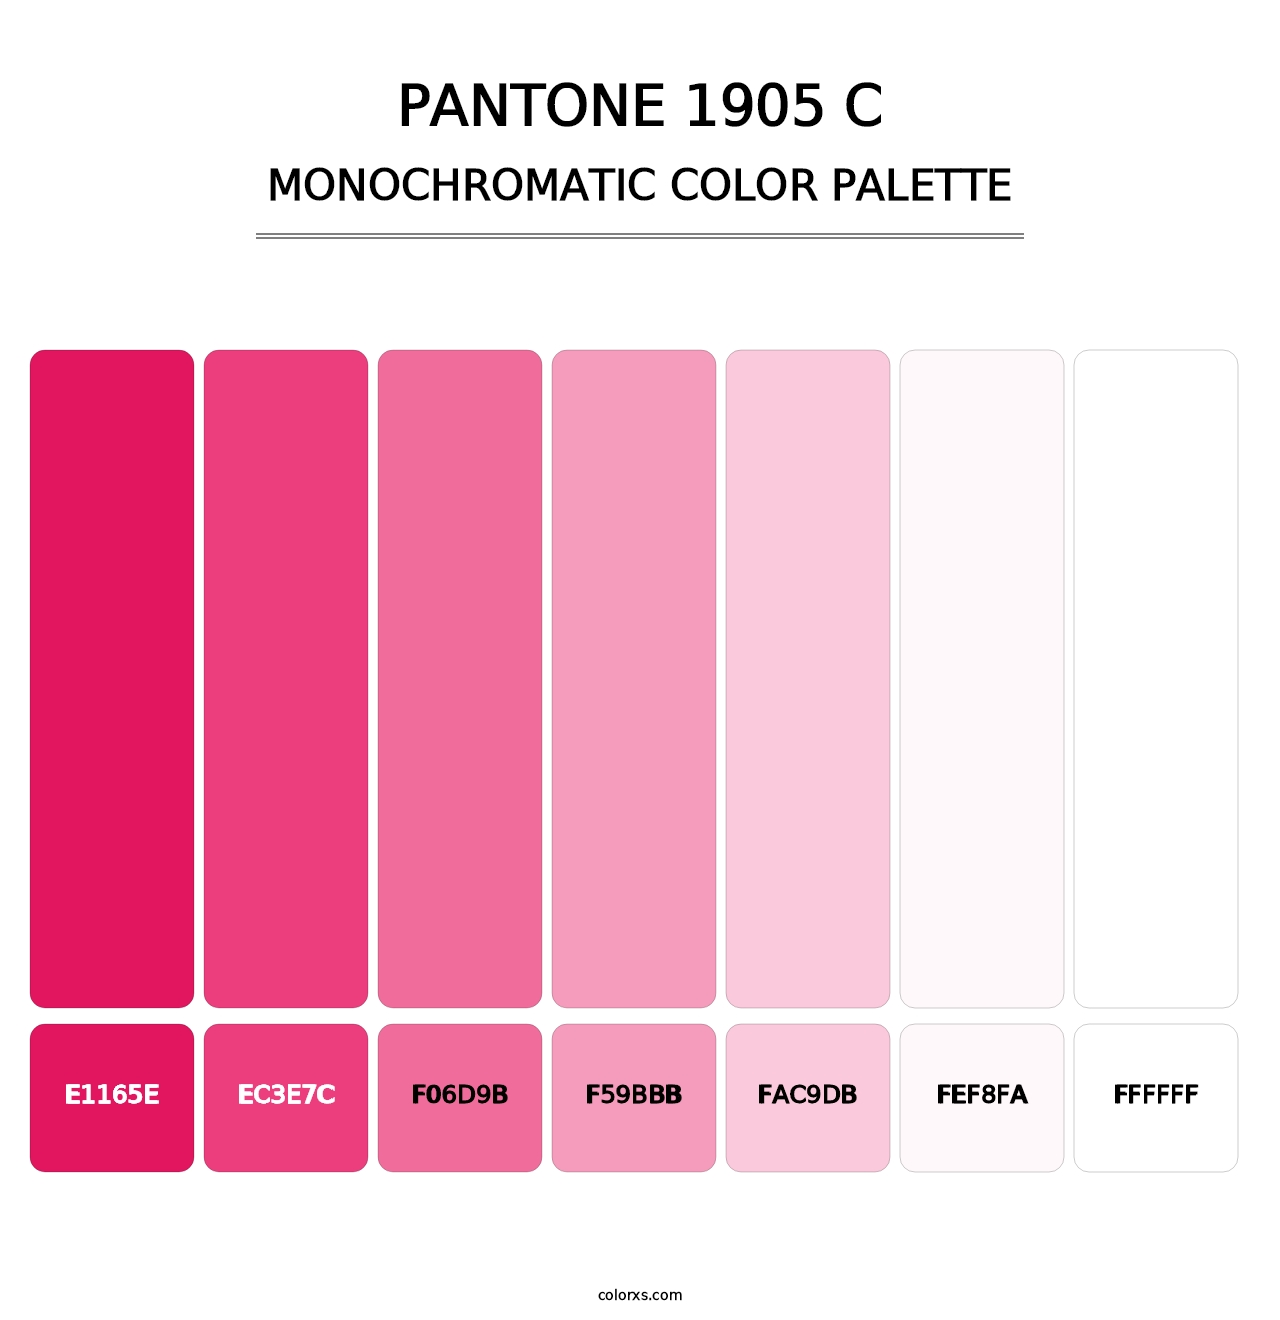 PANTONE 1905 C - Monochromatic Color Palette